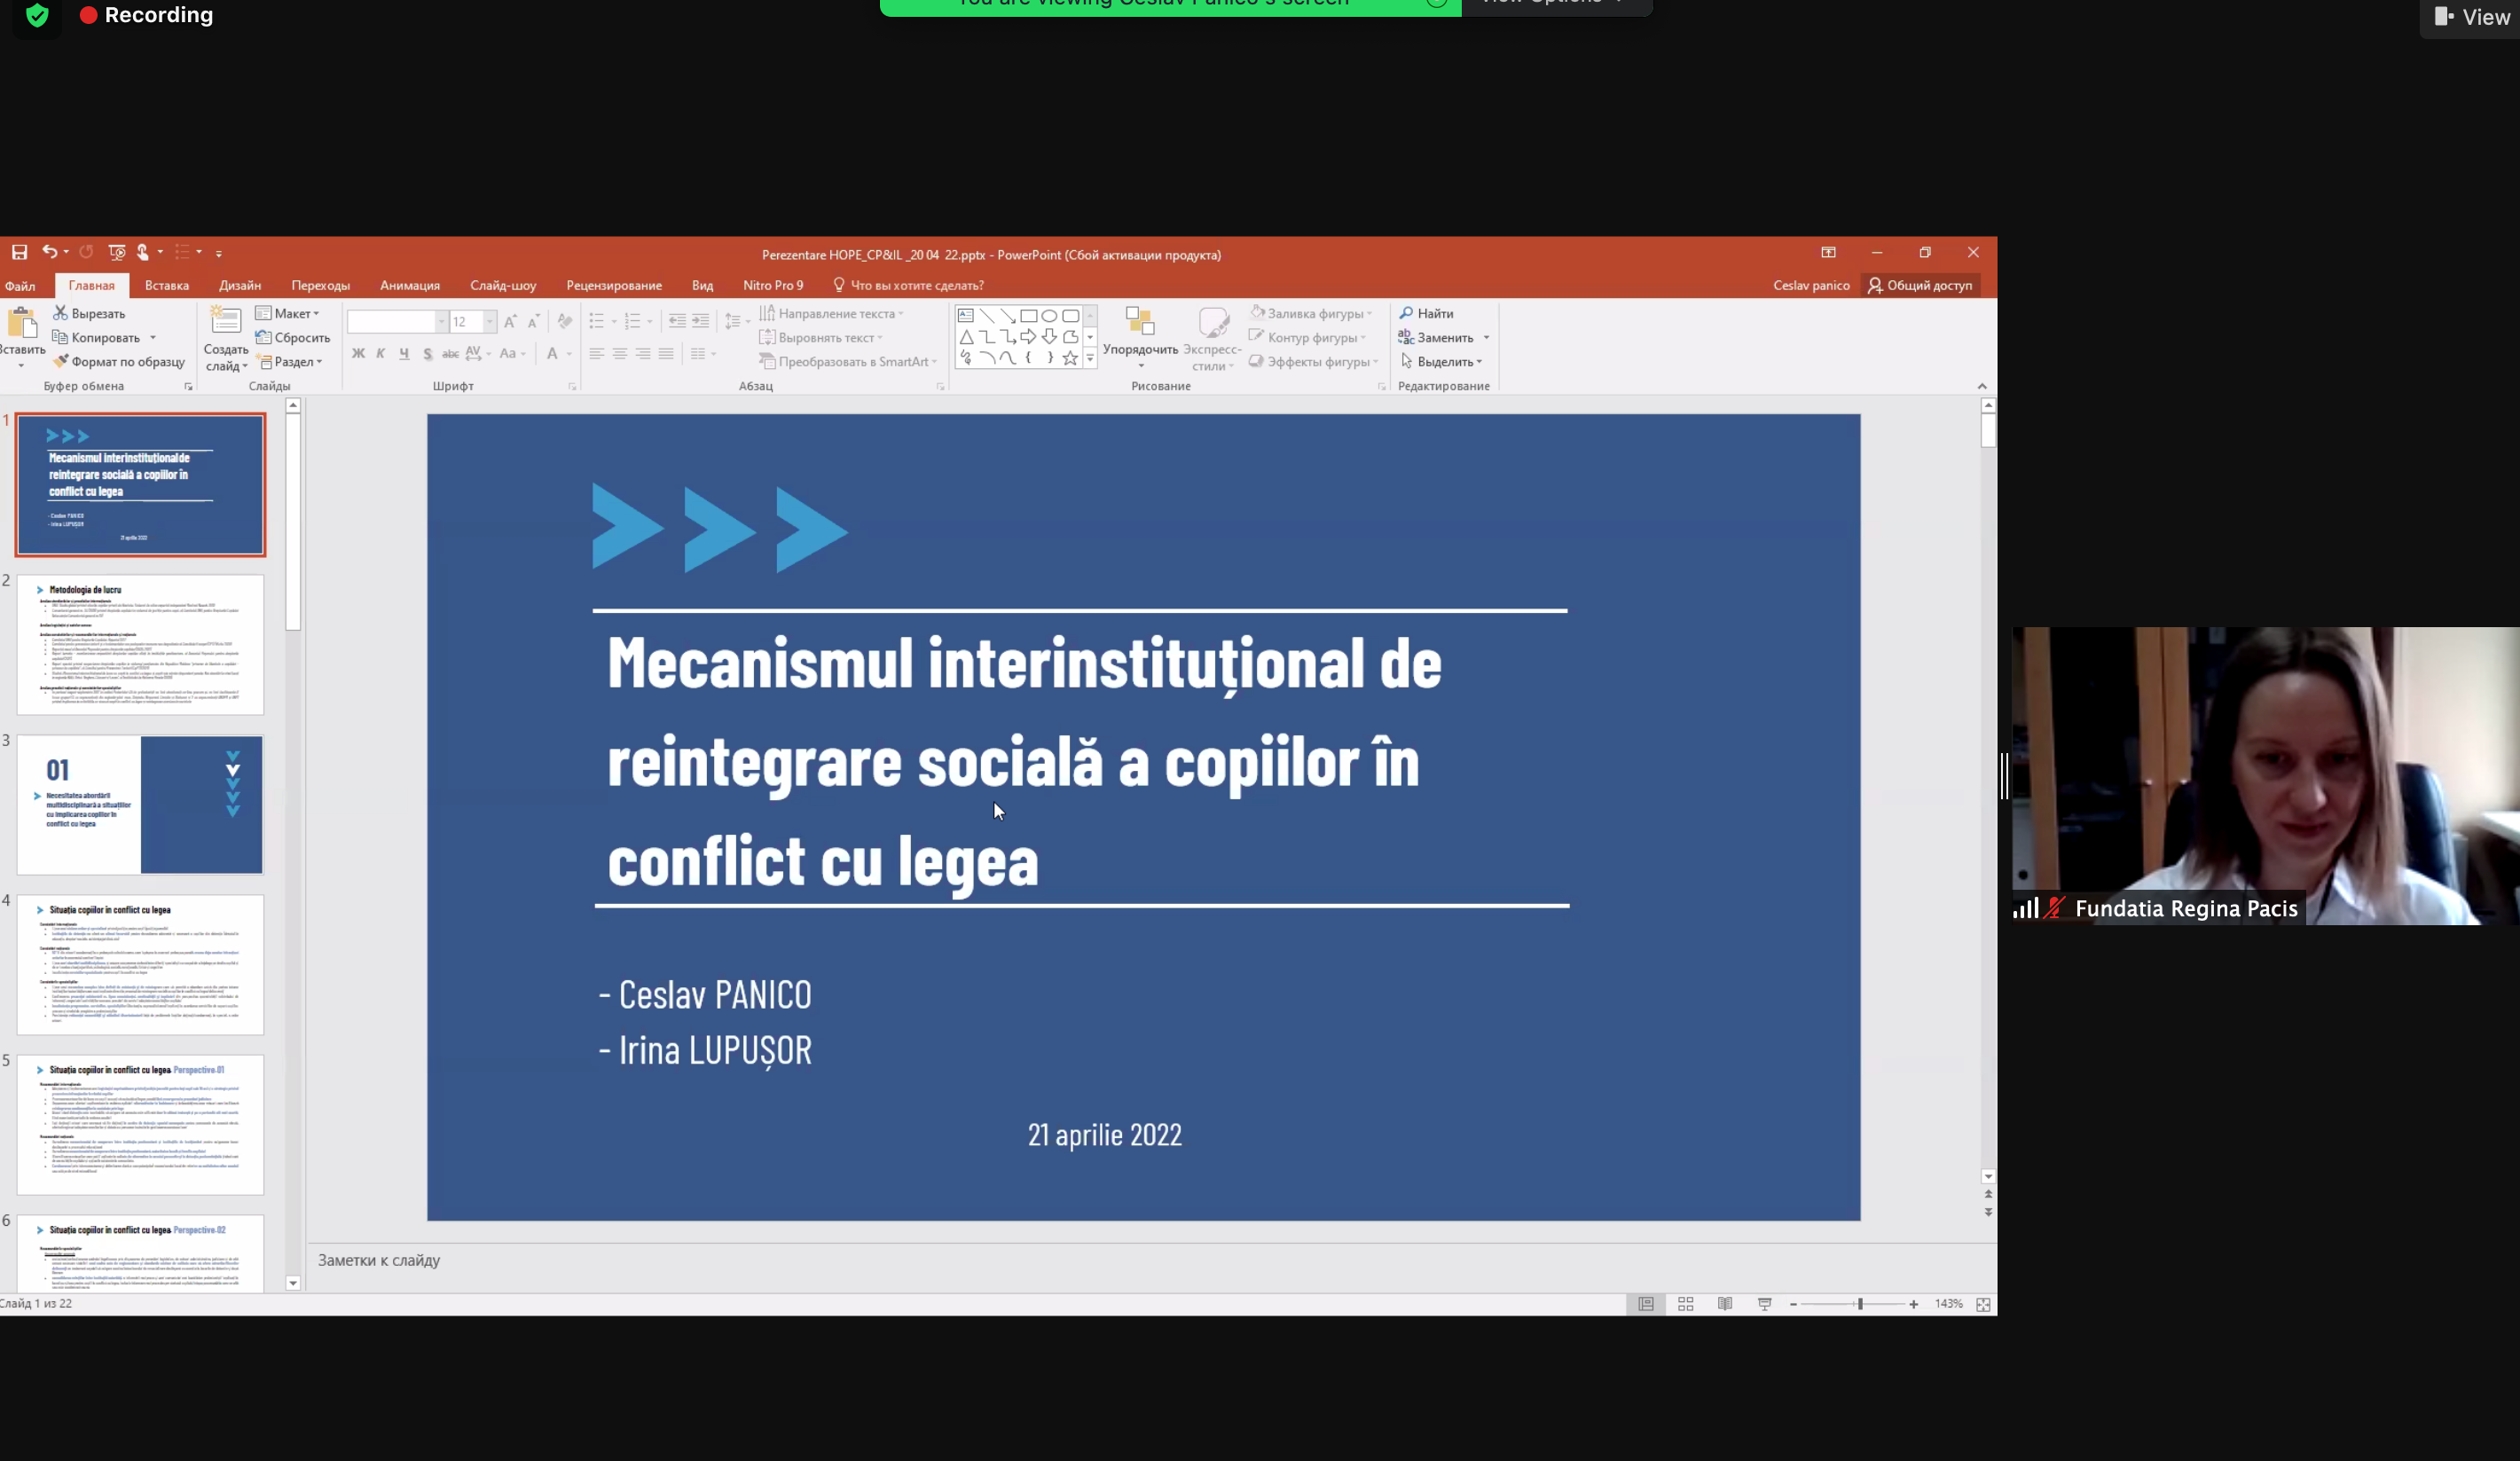 Proiectul Mecanismului intersectorial privind reintegrarea socială a copiilor în conflict cu legea prezentat spre consultare